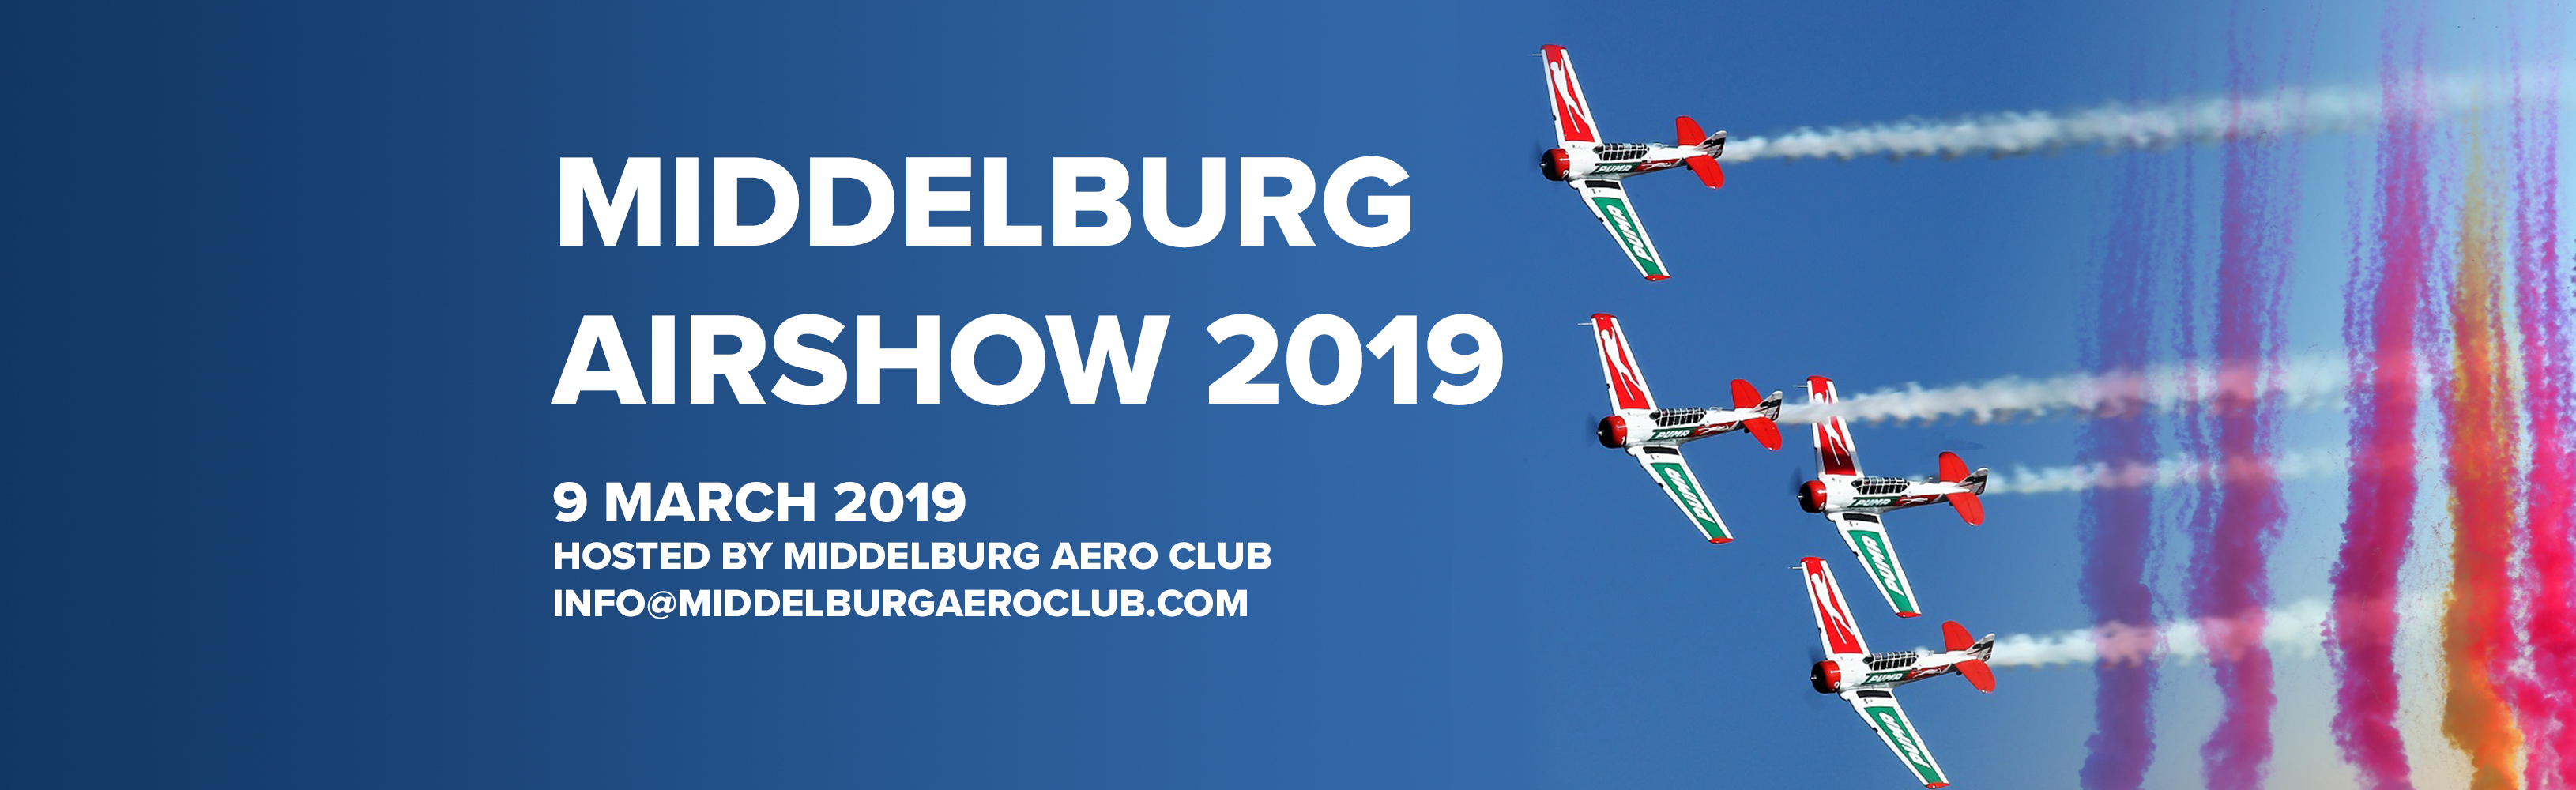 Middelburg Airshow 2019